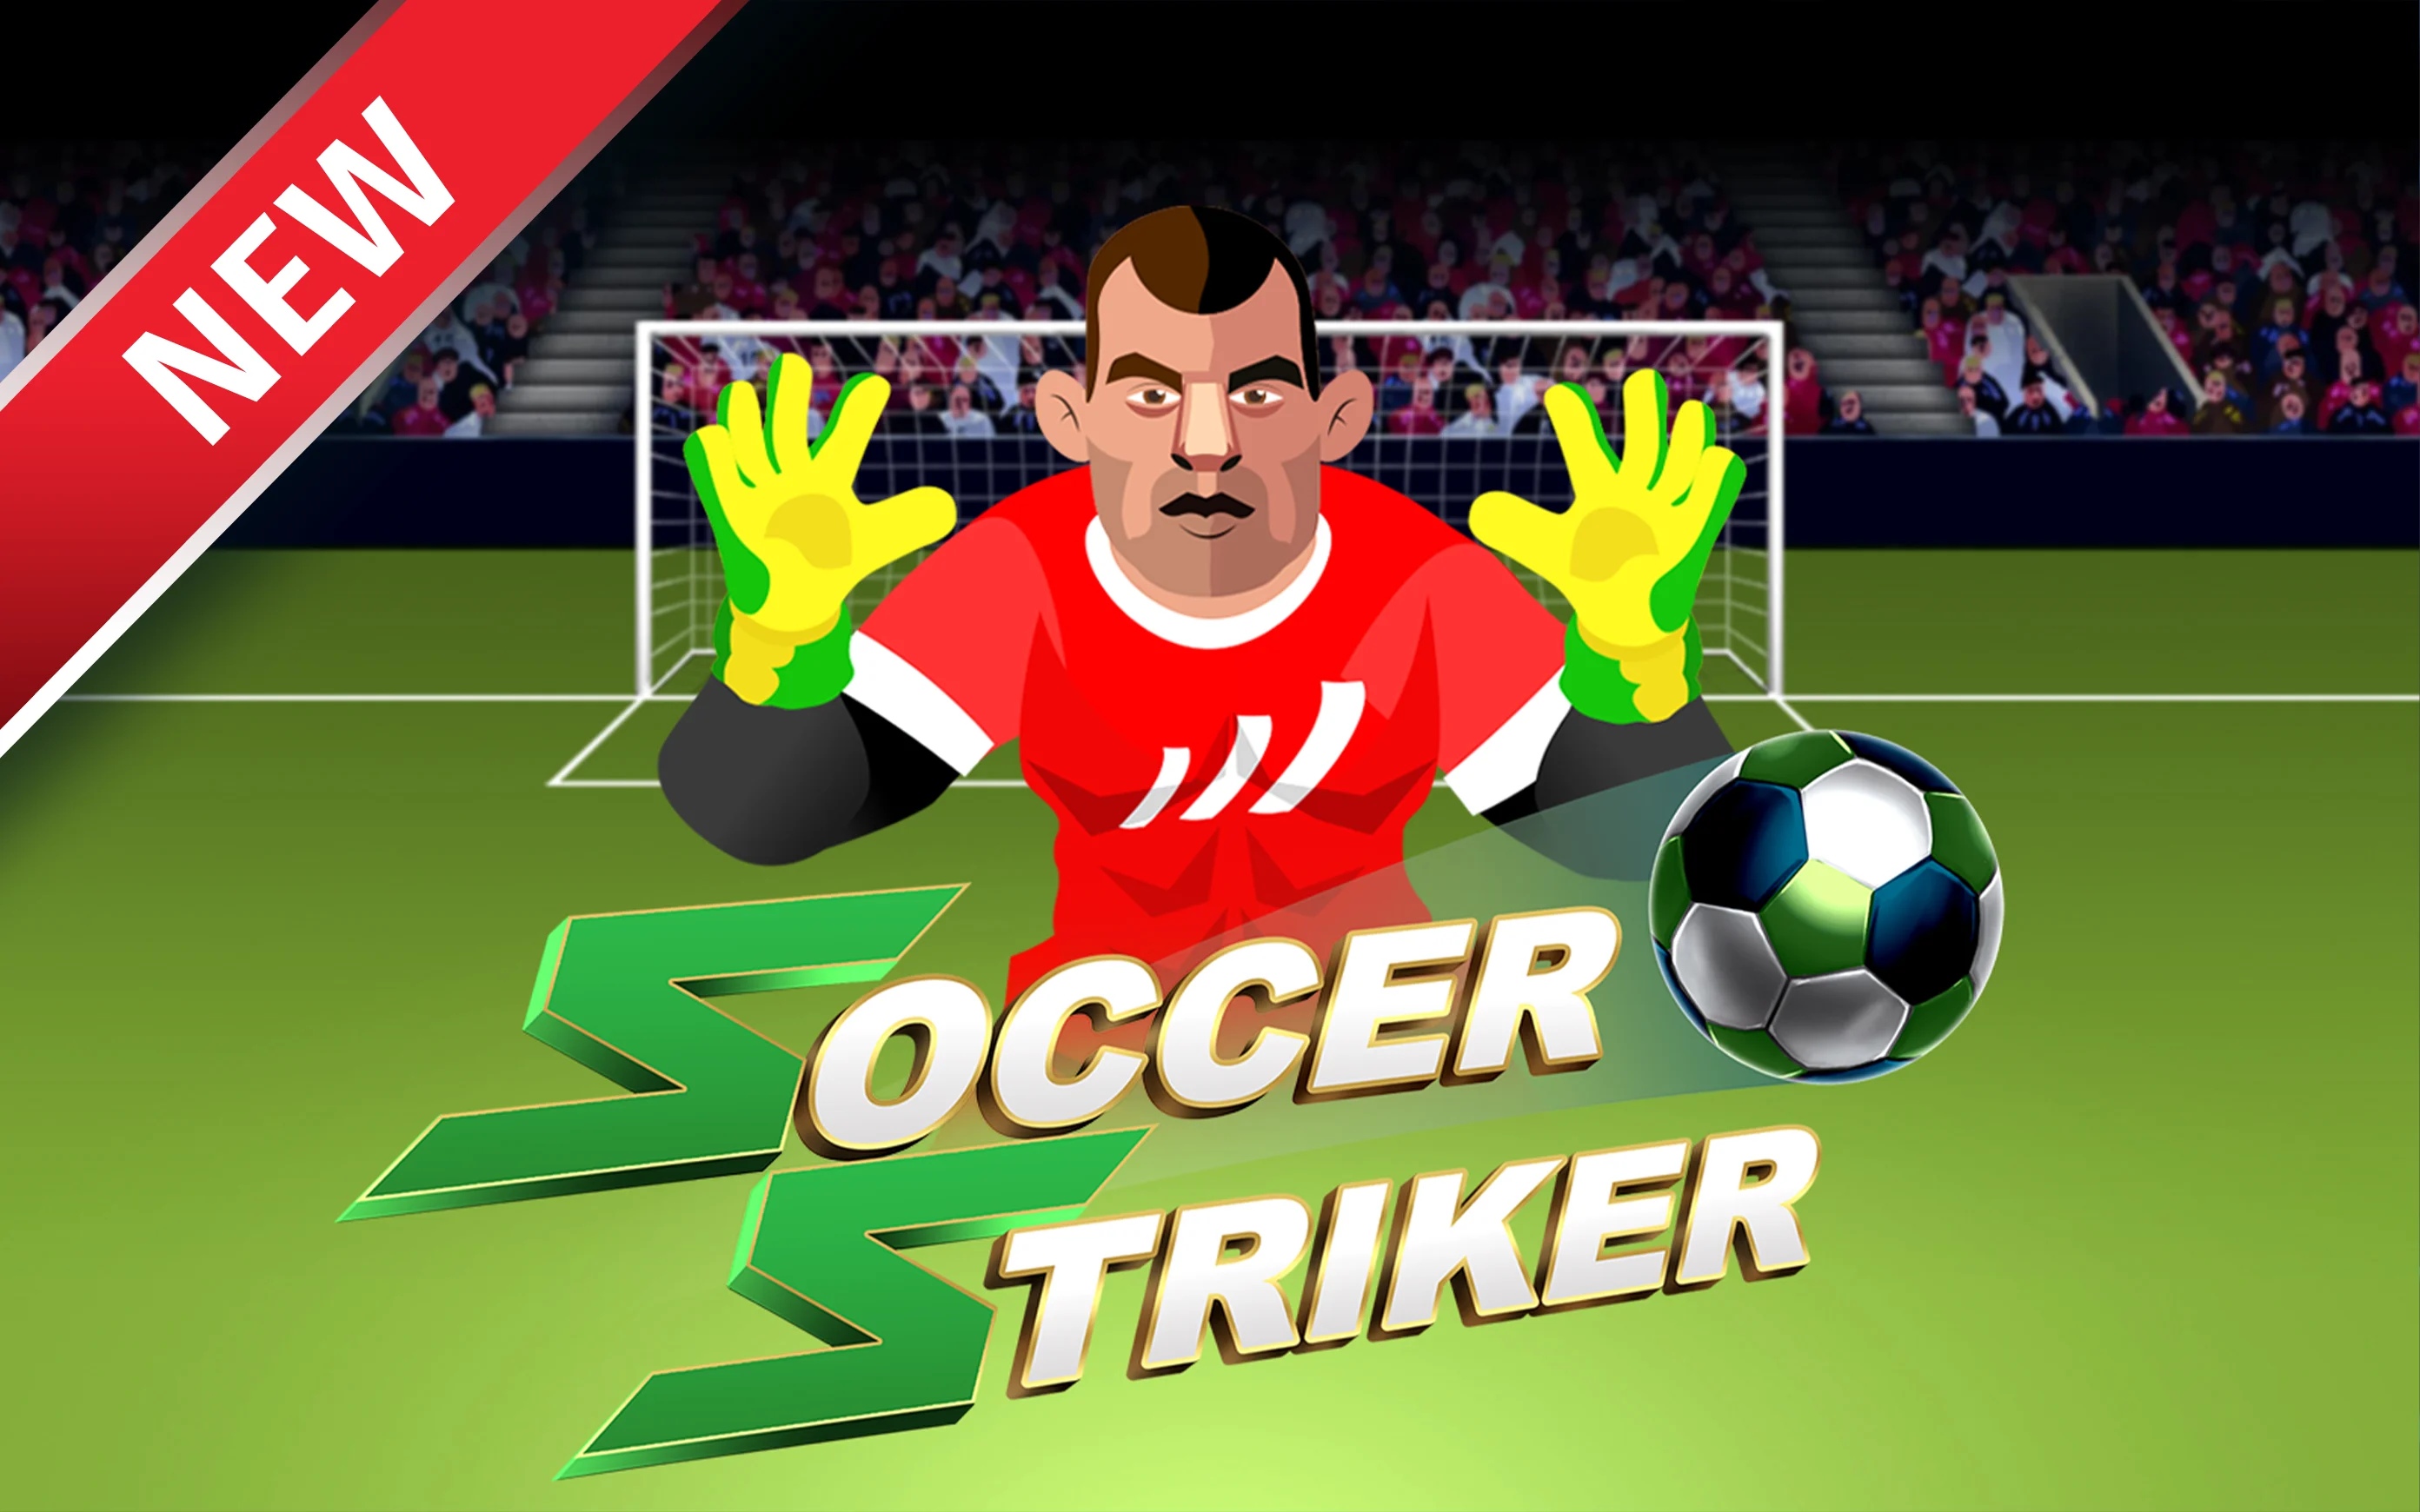 Zagraj w Soccer Striker w kasynie online Starcasino.be